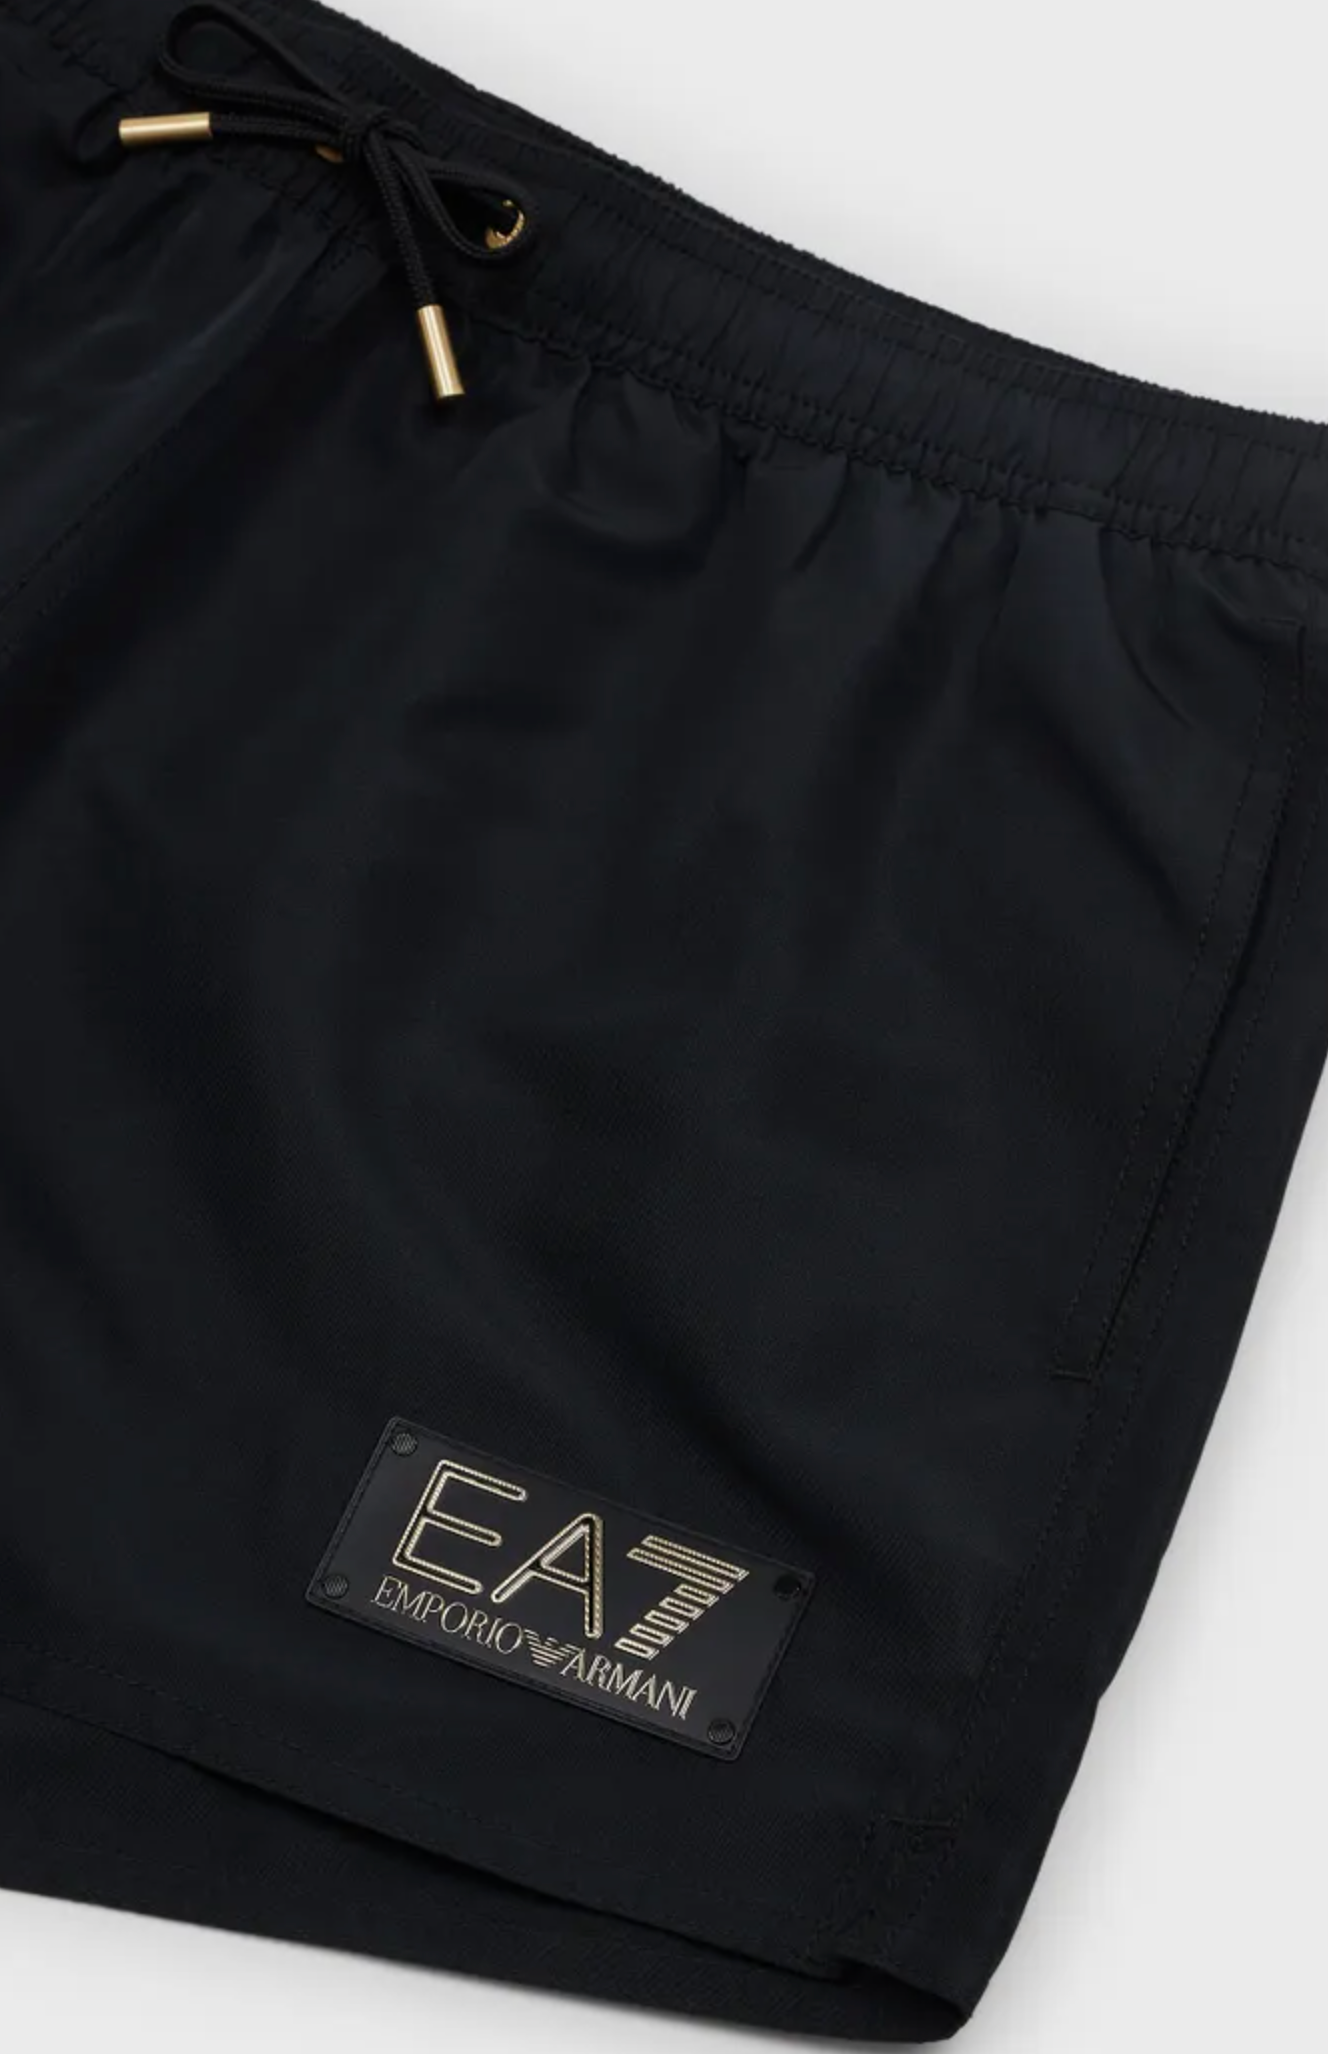 EA7 By Emporio Armani Gold Label Swim Shorts Black